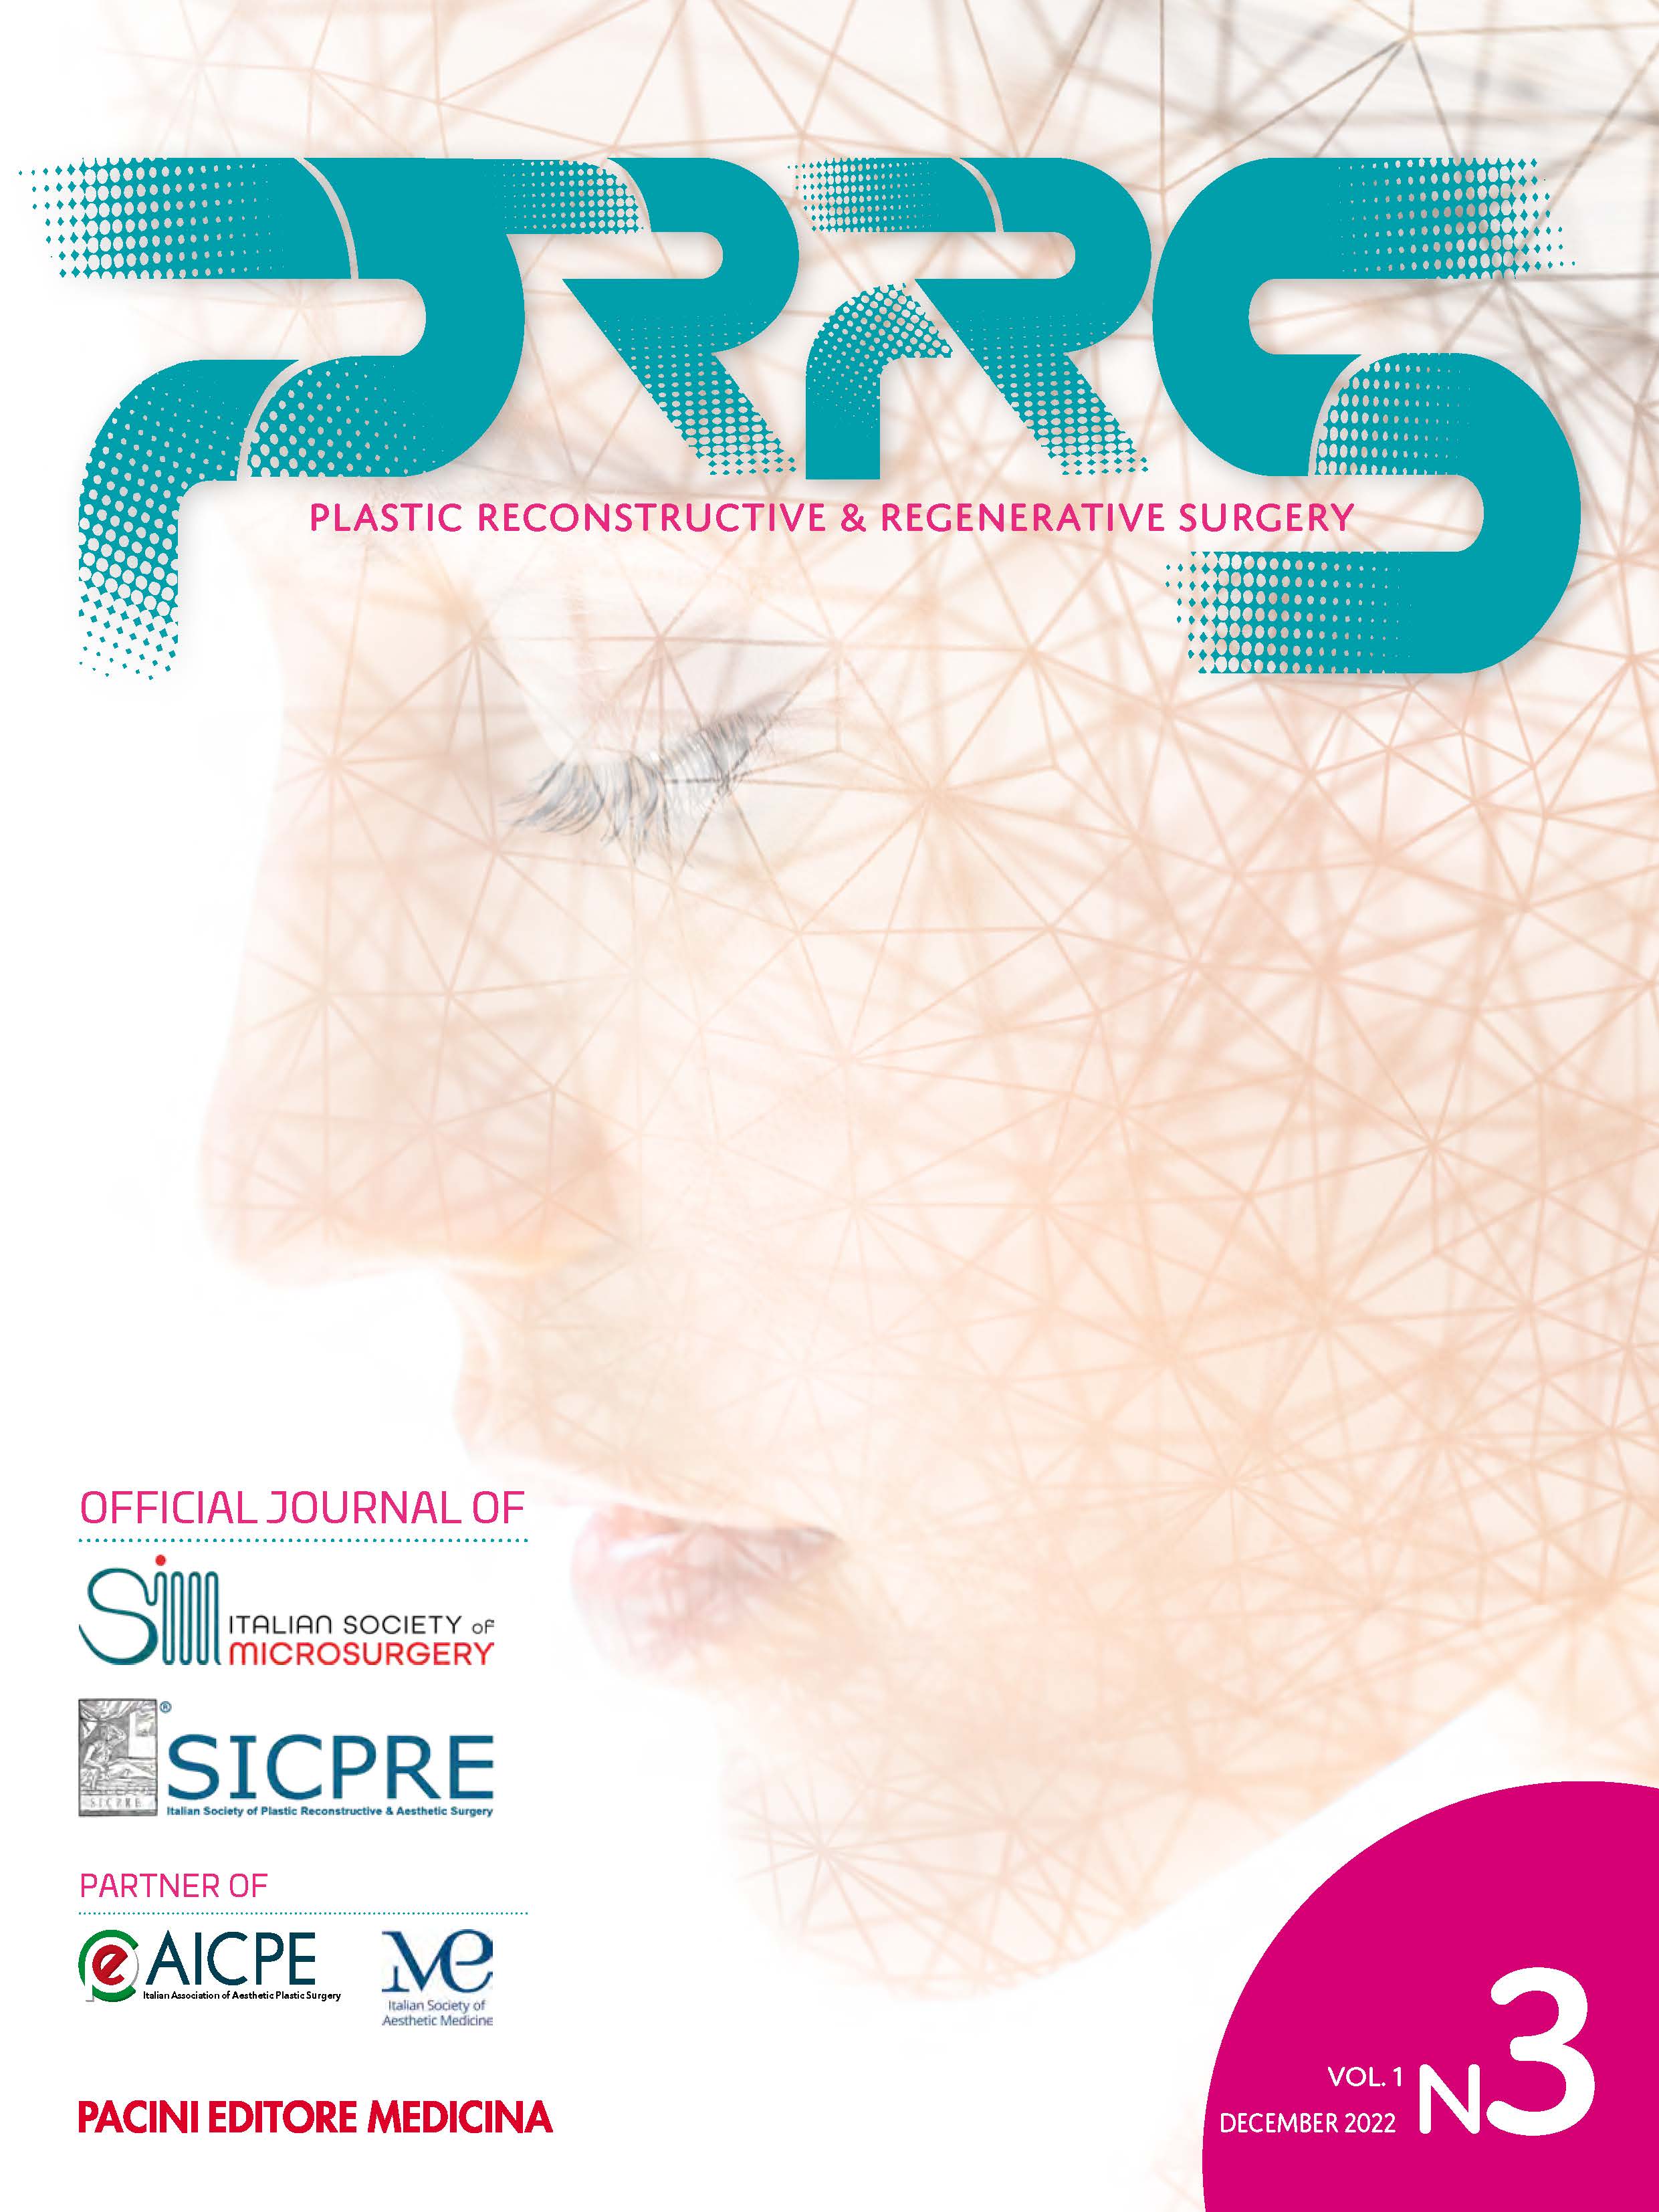 Vol. 1 - Issue 3 - December 2022